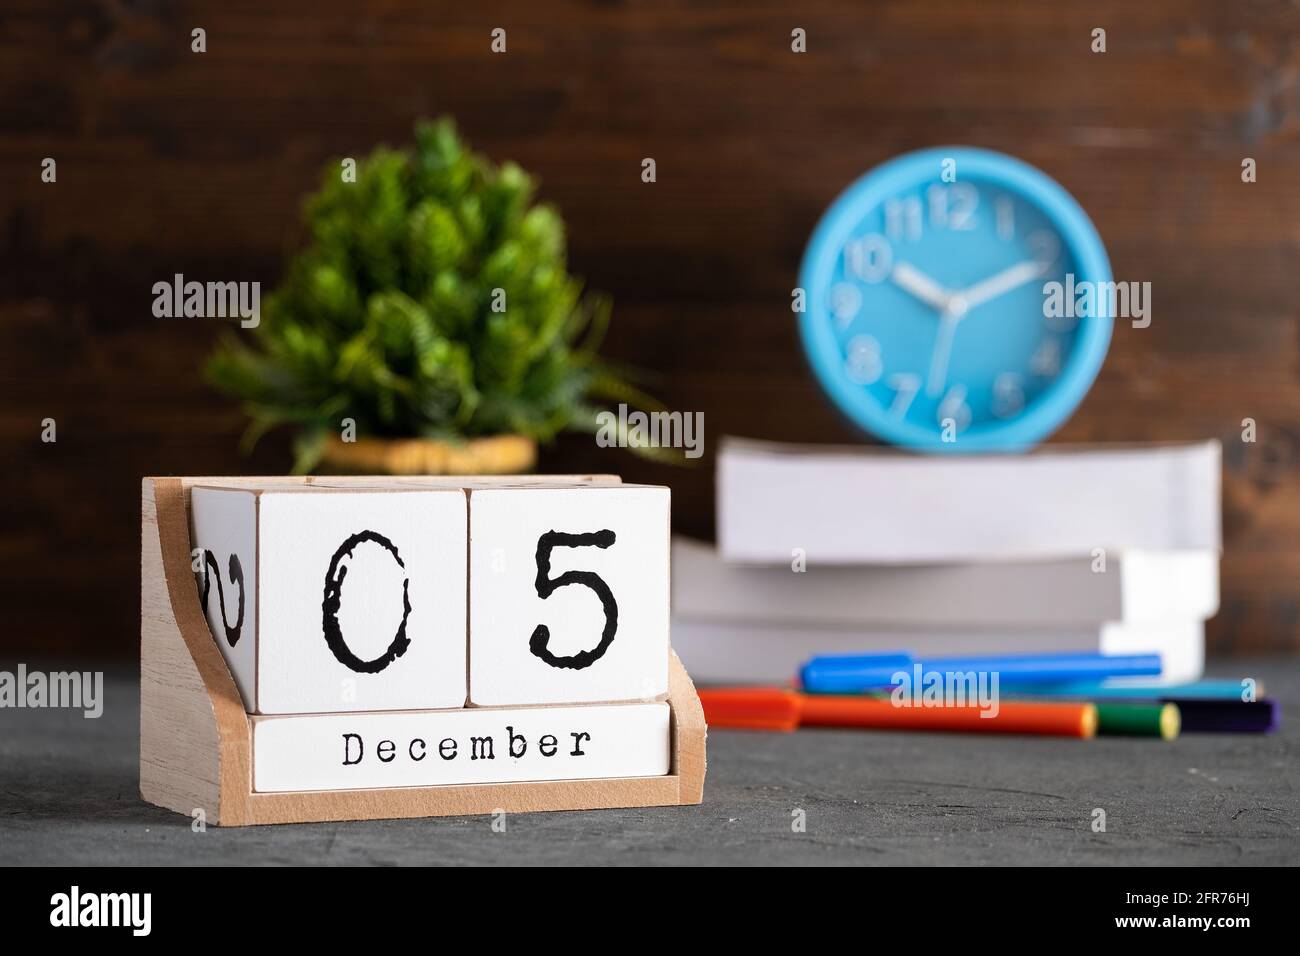 Le 05 décembre. Décembre 05 calendrier cube en bois avec des objets flous sur fond. Banque D'Images